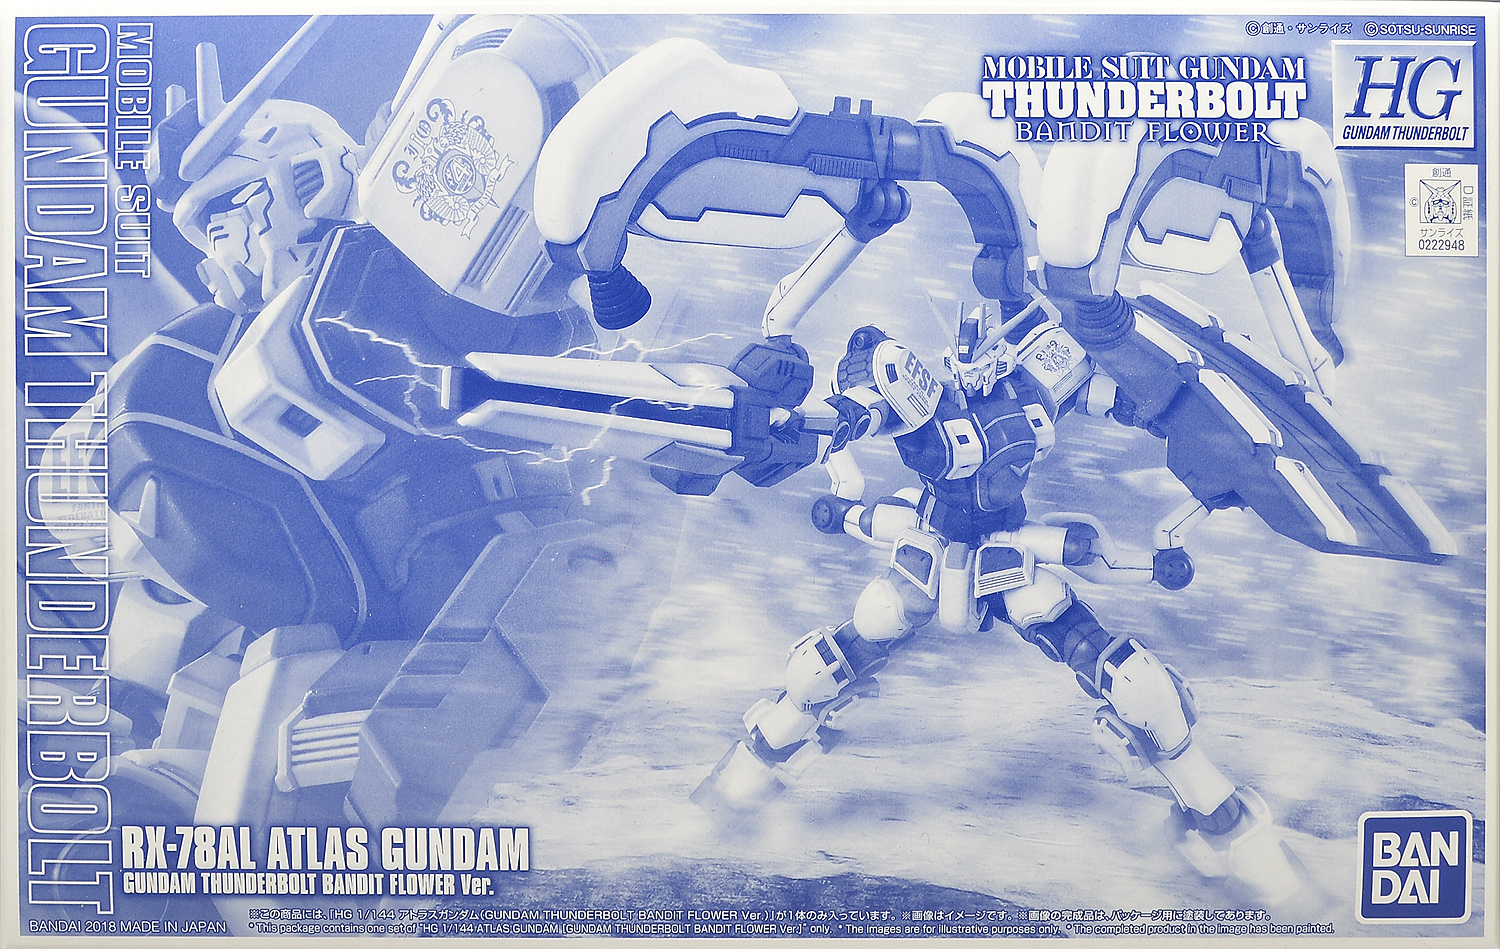 HGGT RX-78AL Atlas Gundam (Gundam Thunderbolt Bandit Flower Ver 